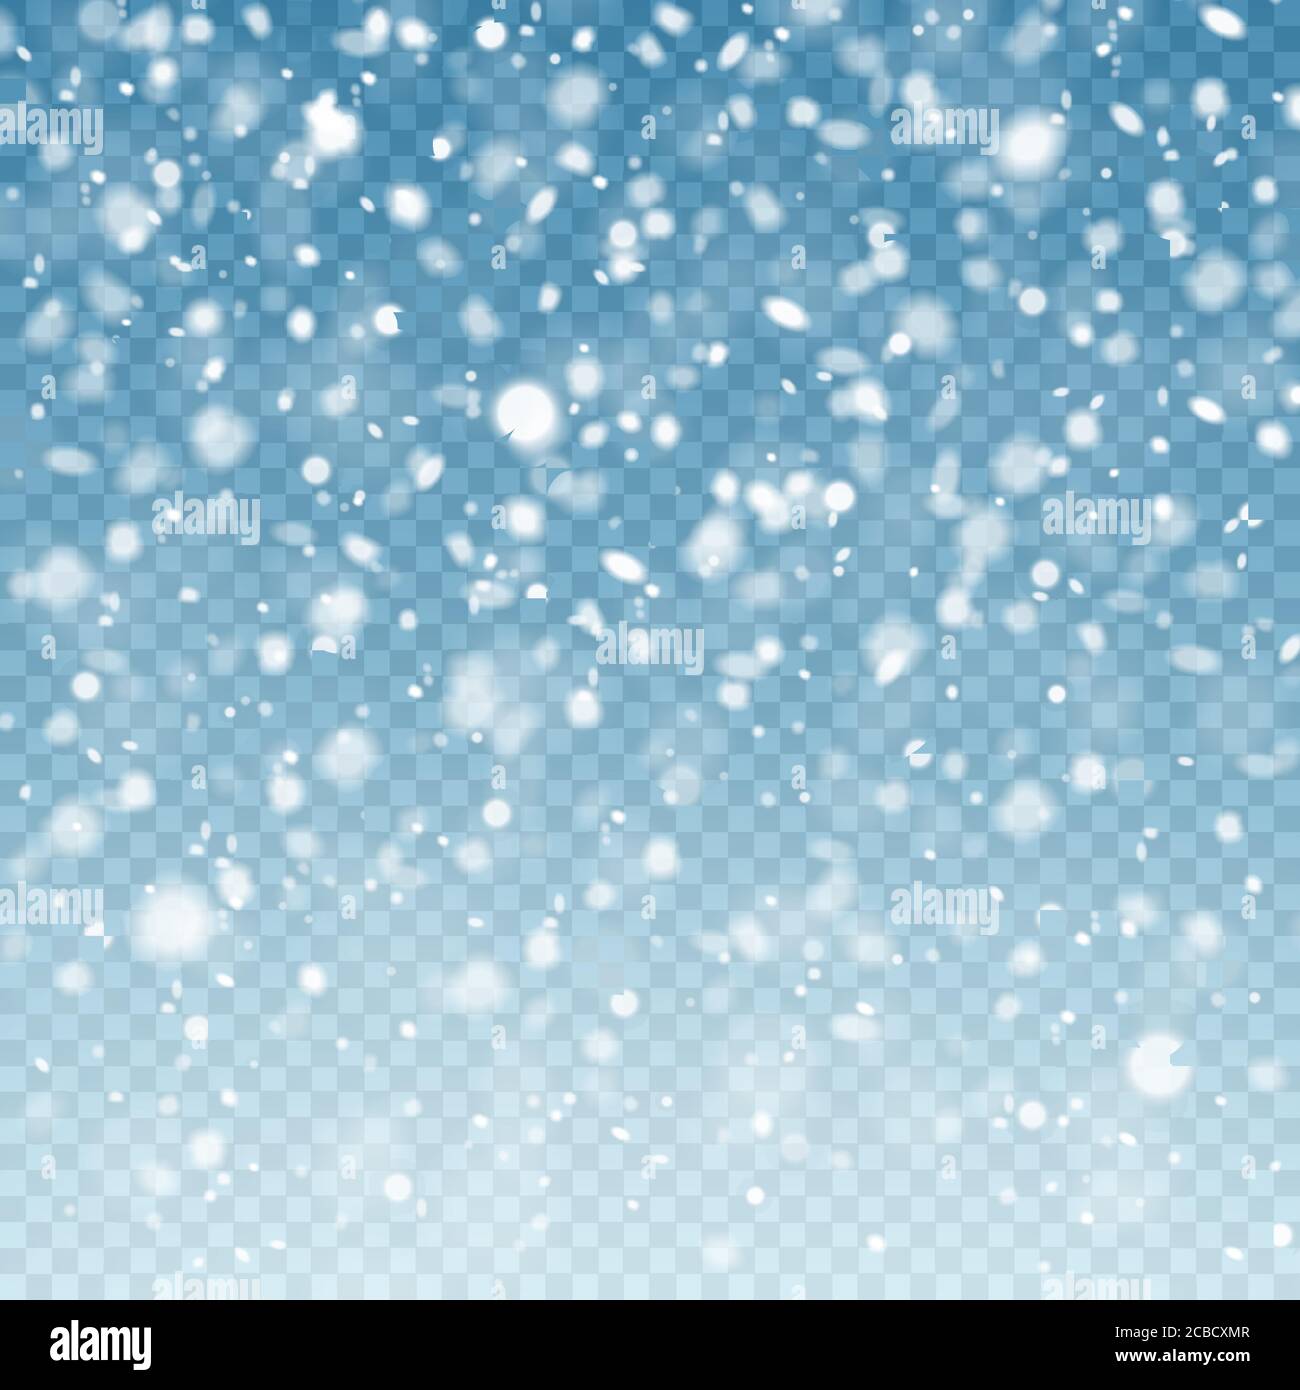 Realistischer fallender Schnee. Schneehintergrund. Froststurm, Schneefall-Effekt auf blauem transparentem Hintergrund. Weihnachten Hintergrund. Vektorgrafik. Stock Vektor